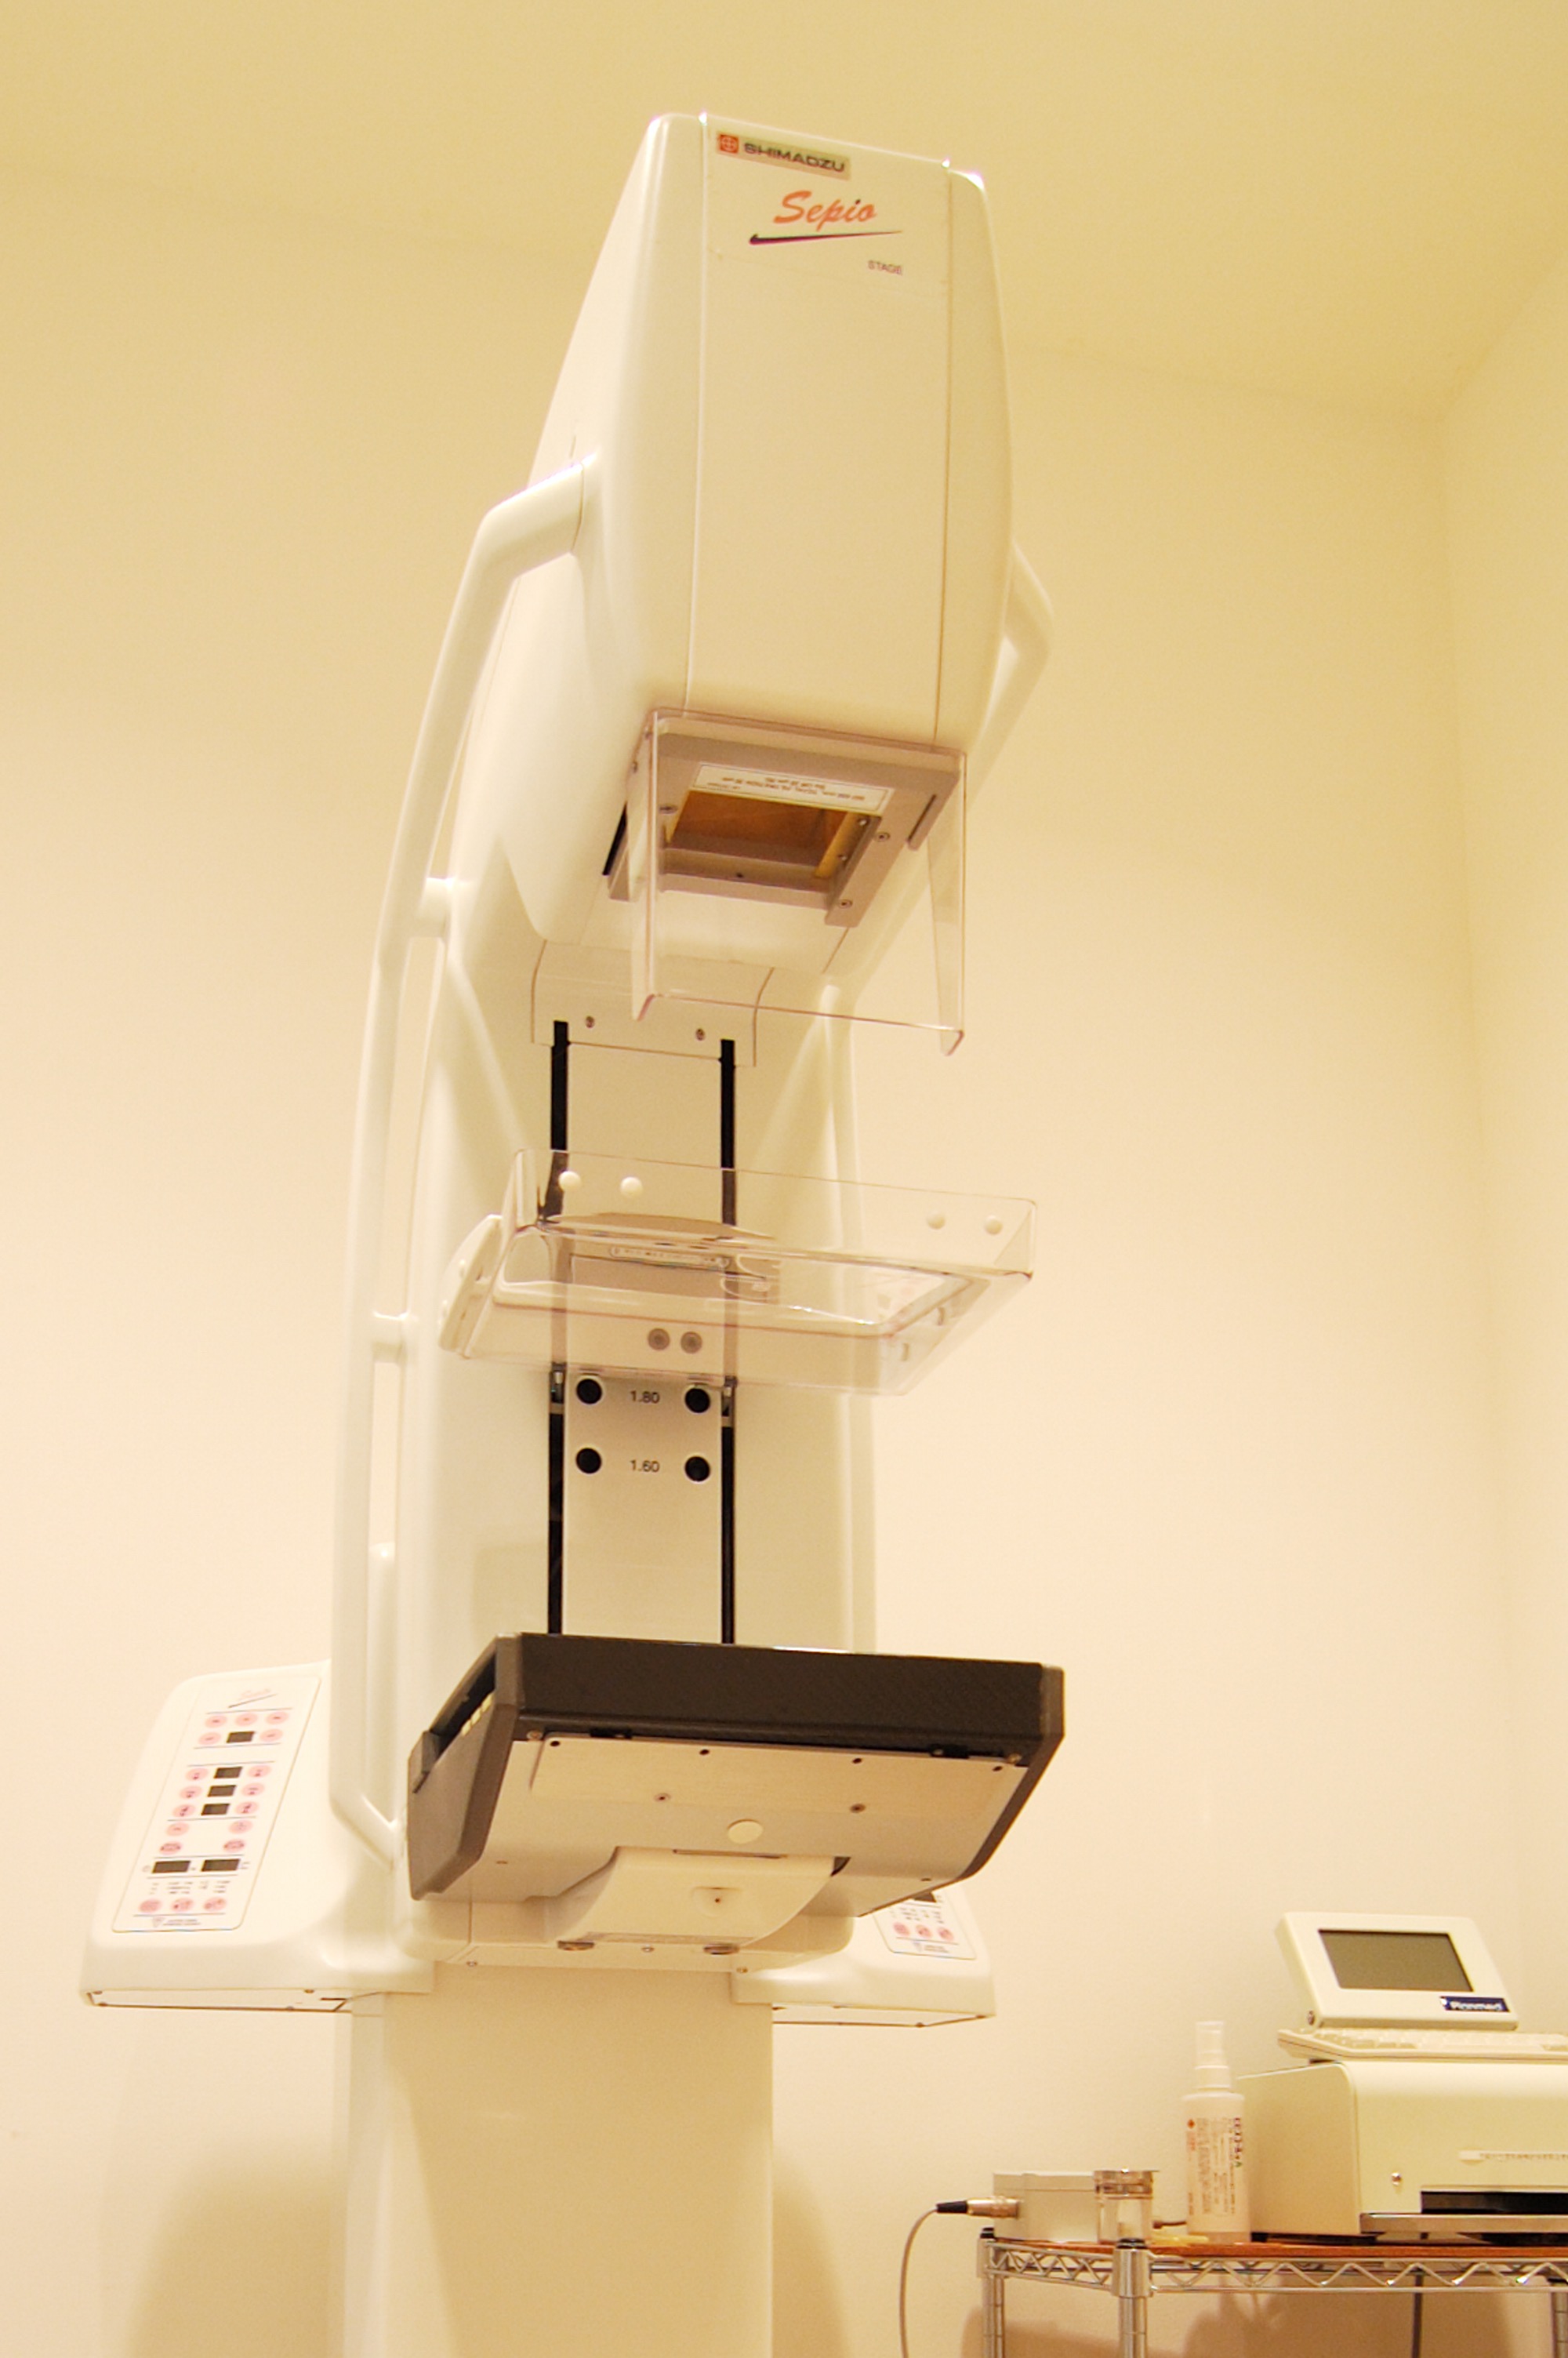 mammograph